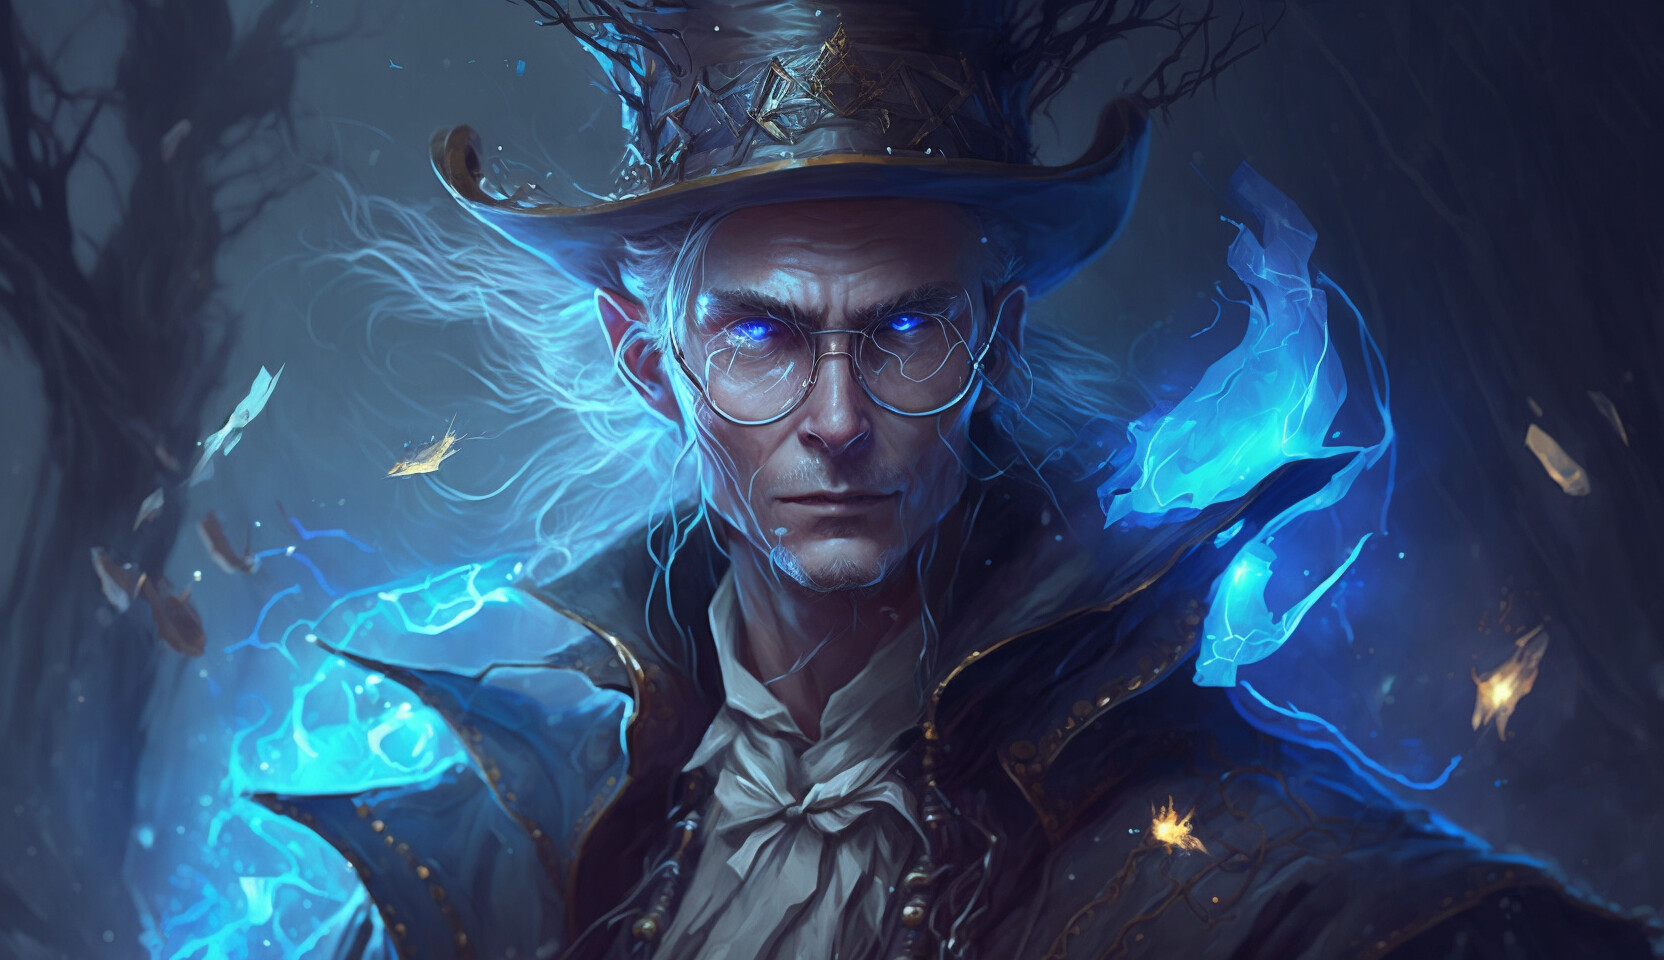 ArtStation - Fantasy World - Wizard - Fantasy Concept Digital Art